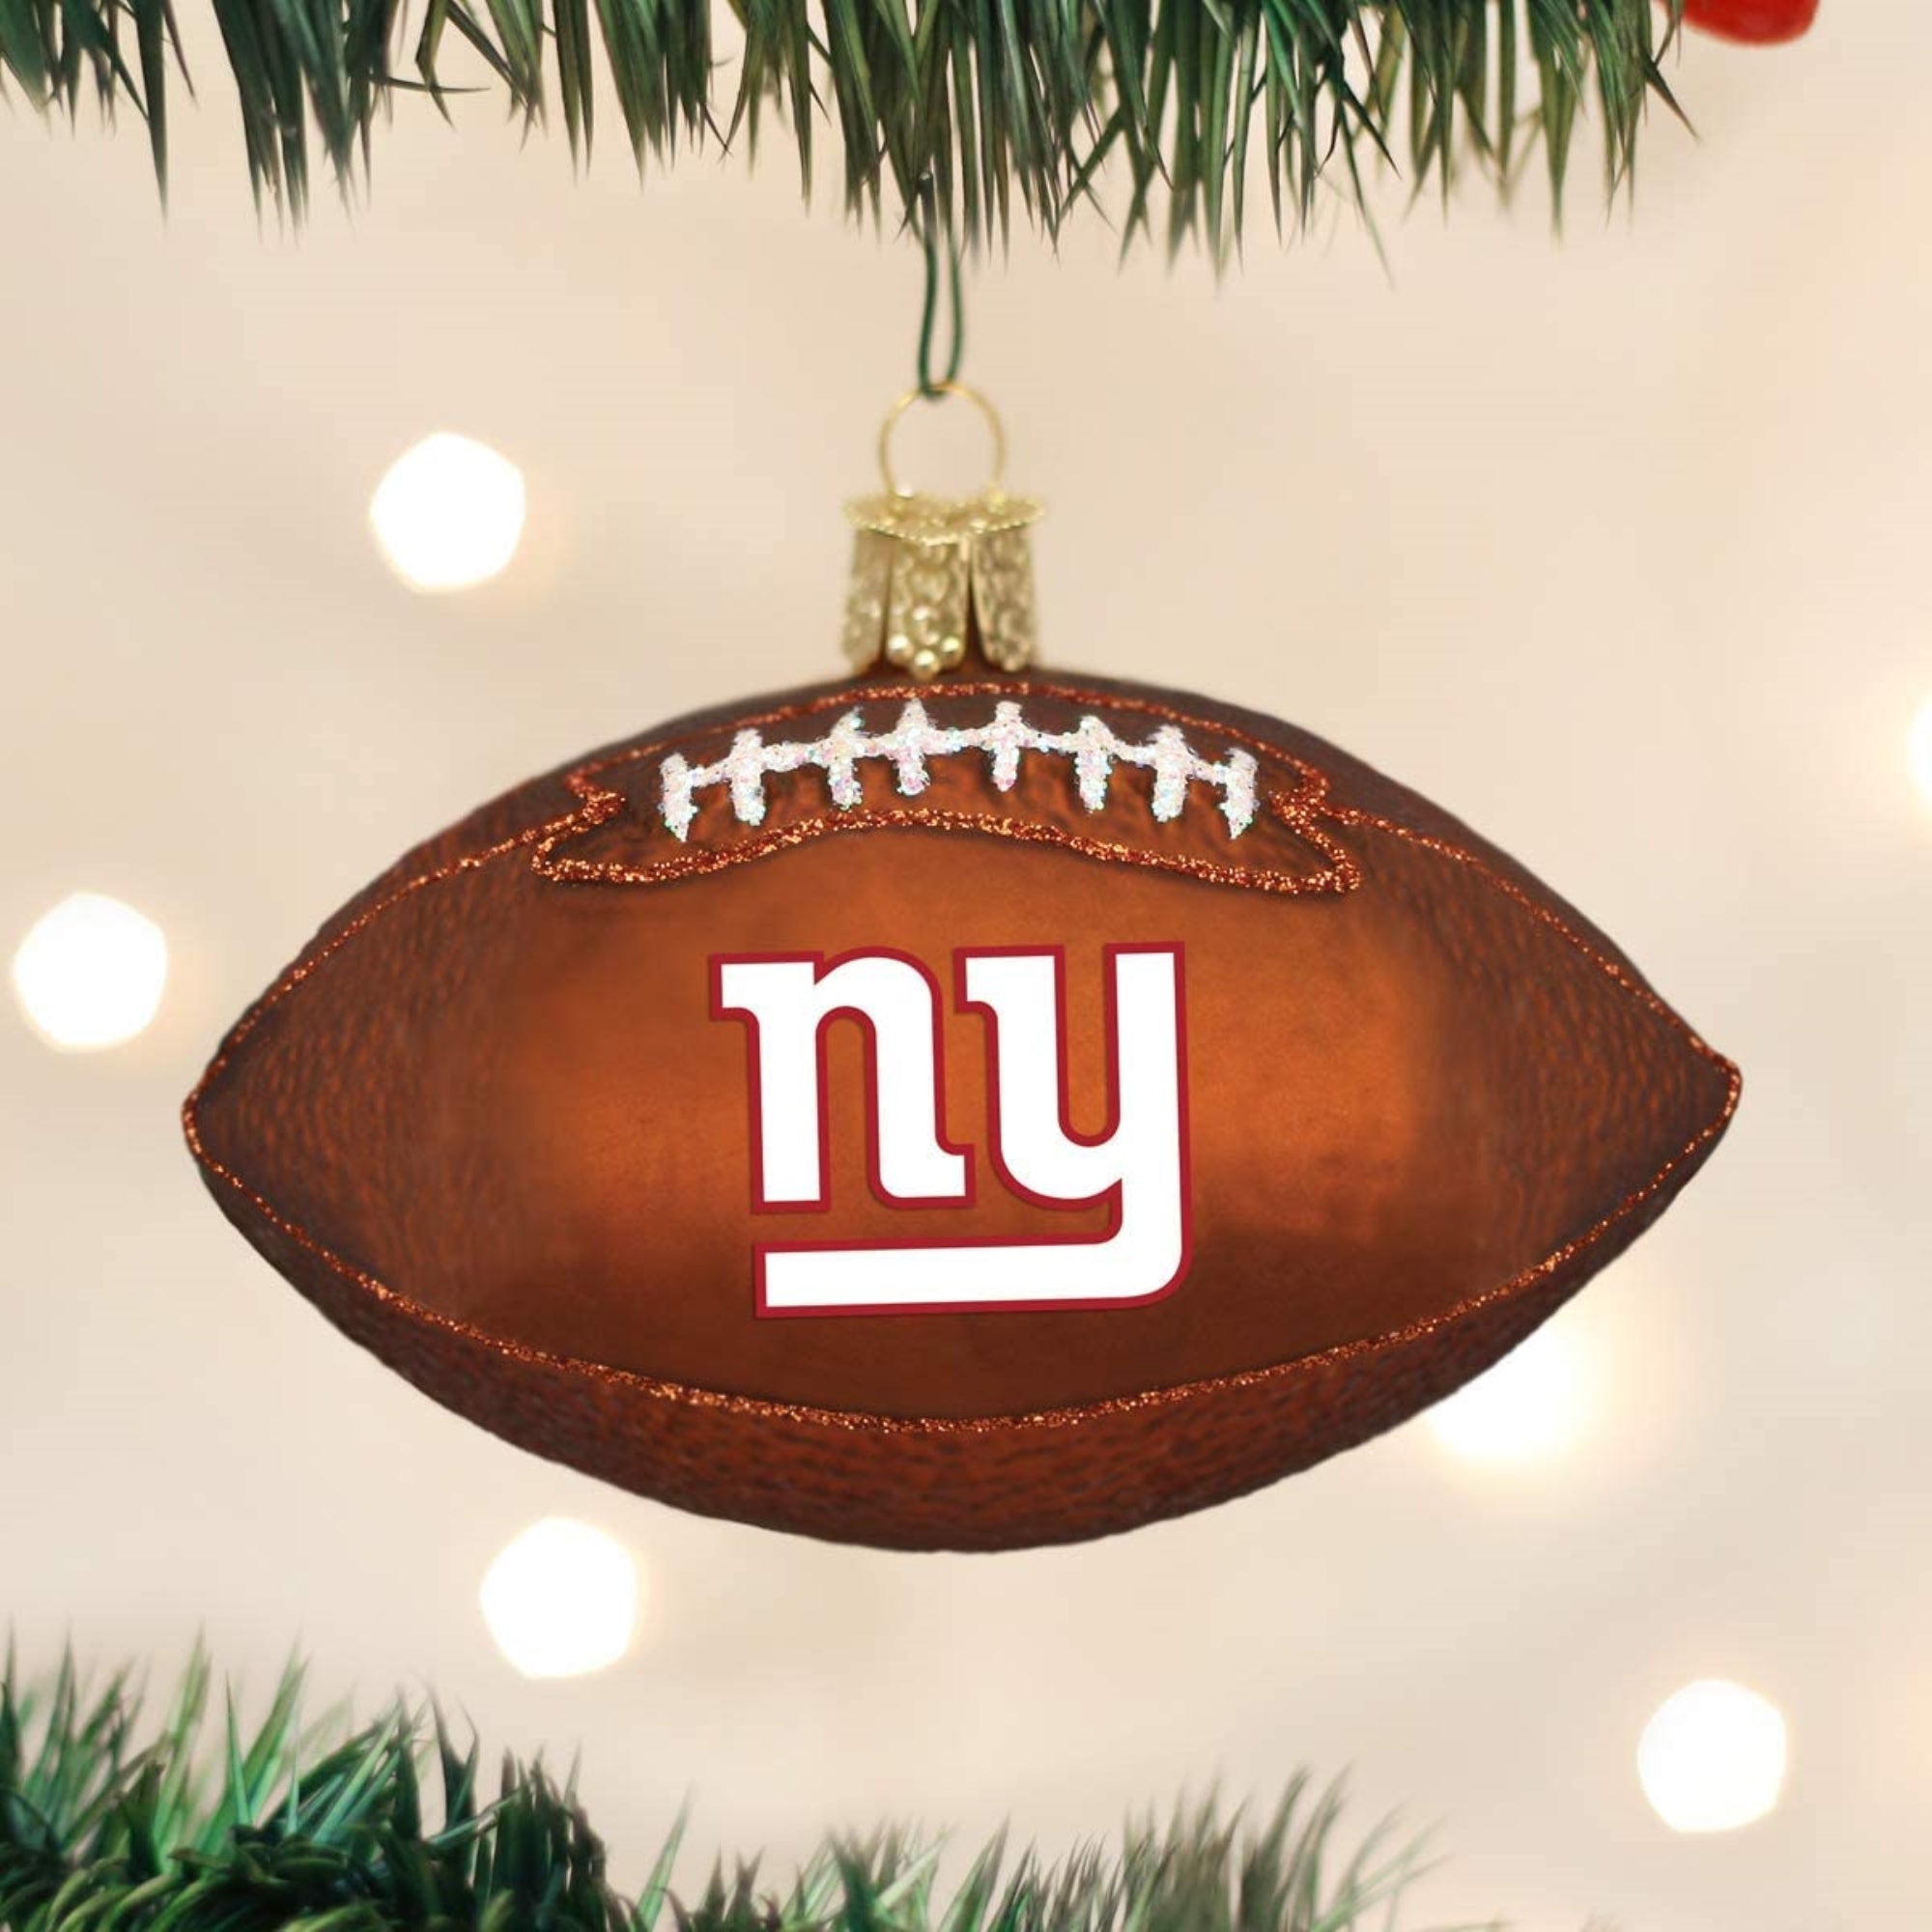 Old World Christmas New York Giants Football Ornament For Christmas Tree